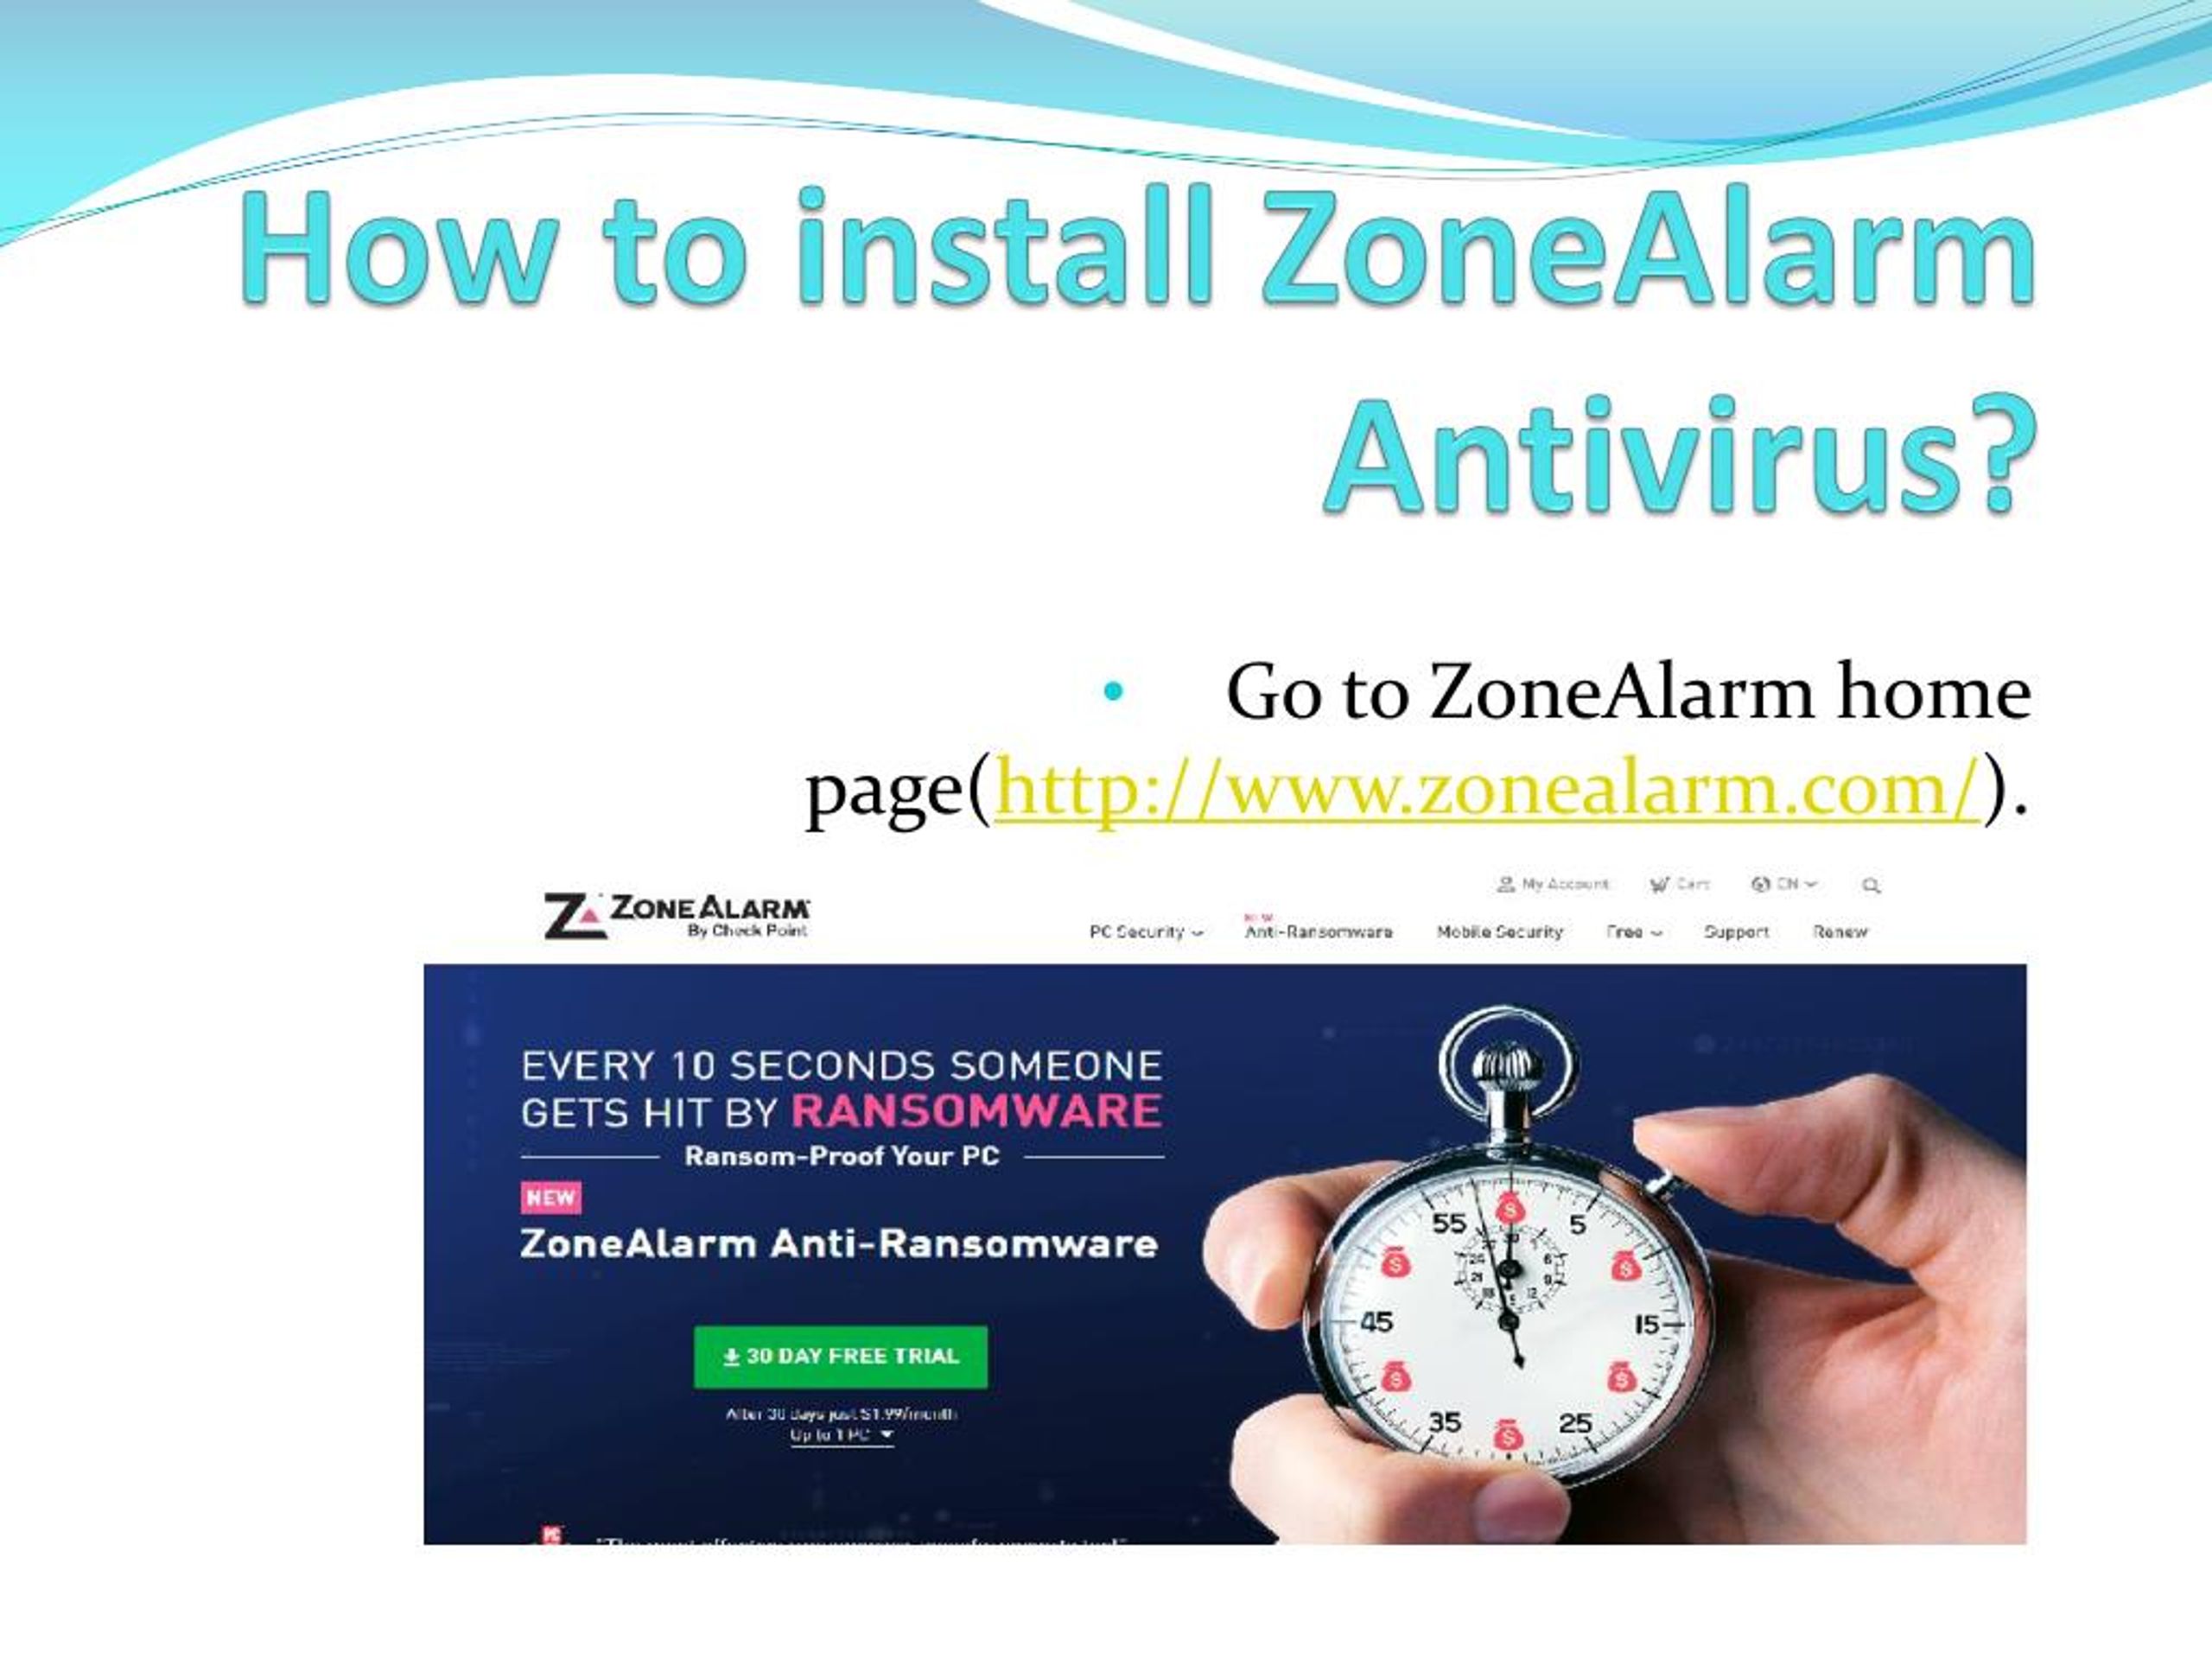 zonealarm antivirus 2018 wont install